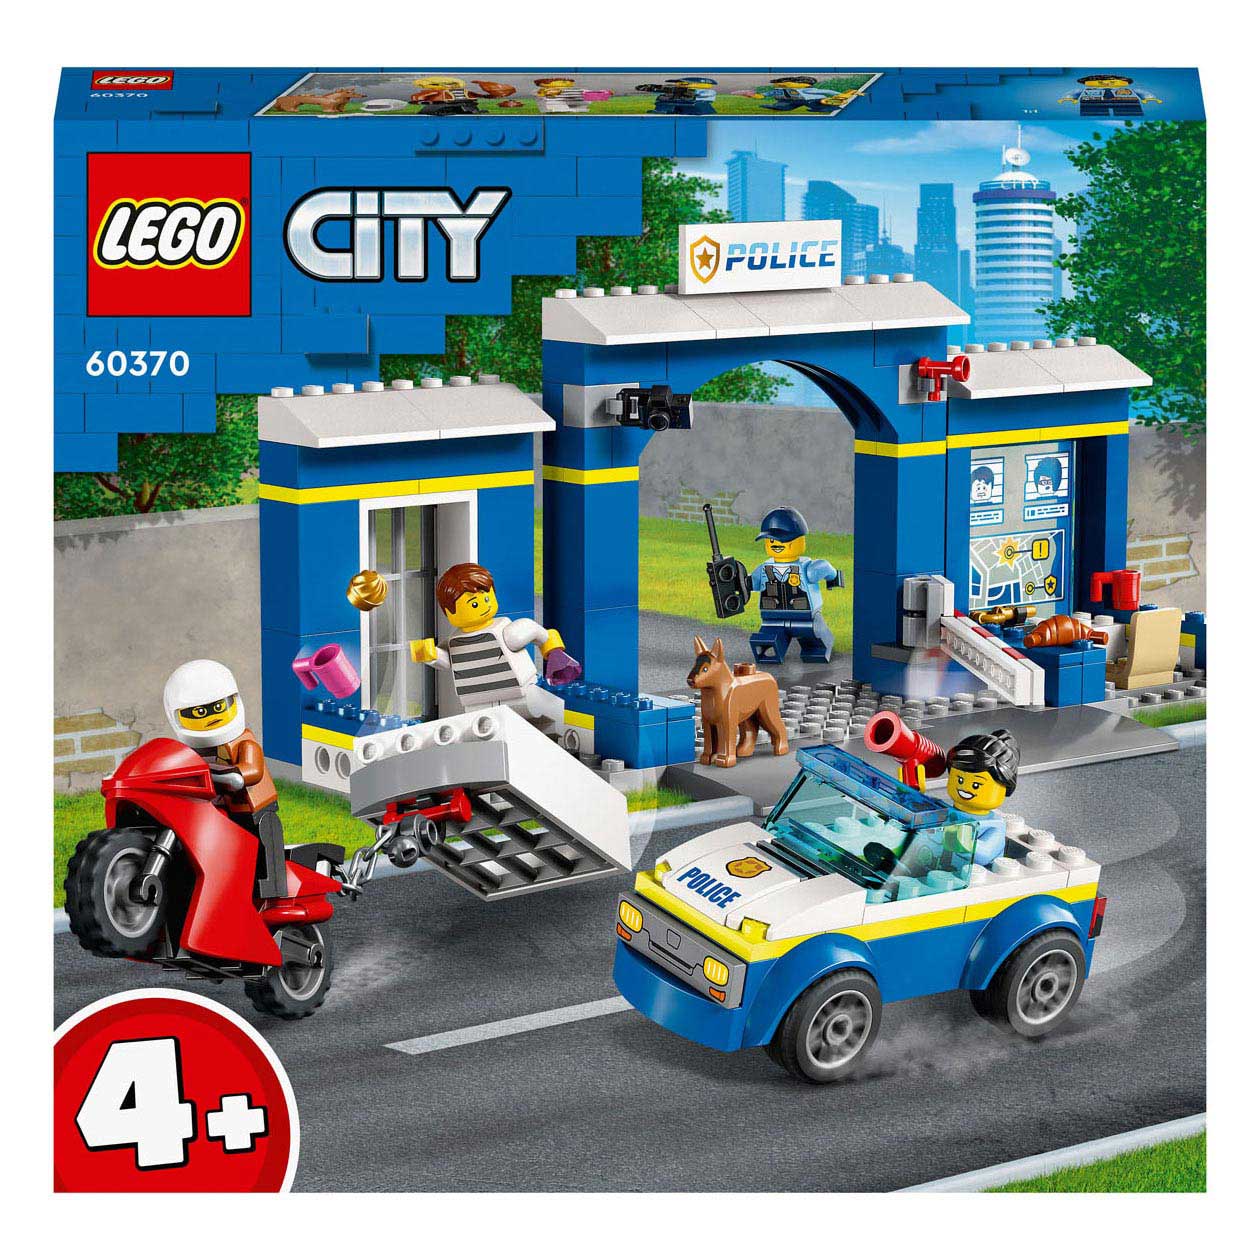 dynastie Hallo zegevierend LEGO City 60370 Achtervolging Politiebureau - Het Speelgoedpaleis